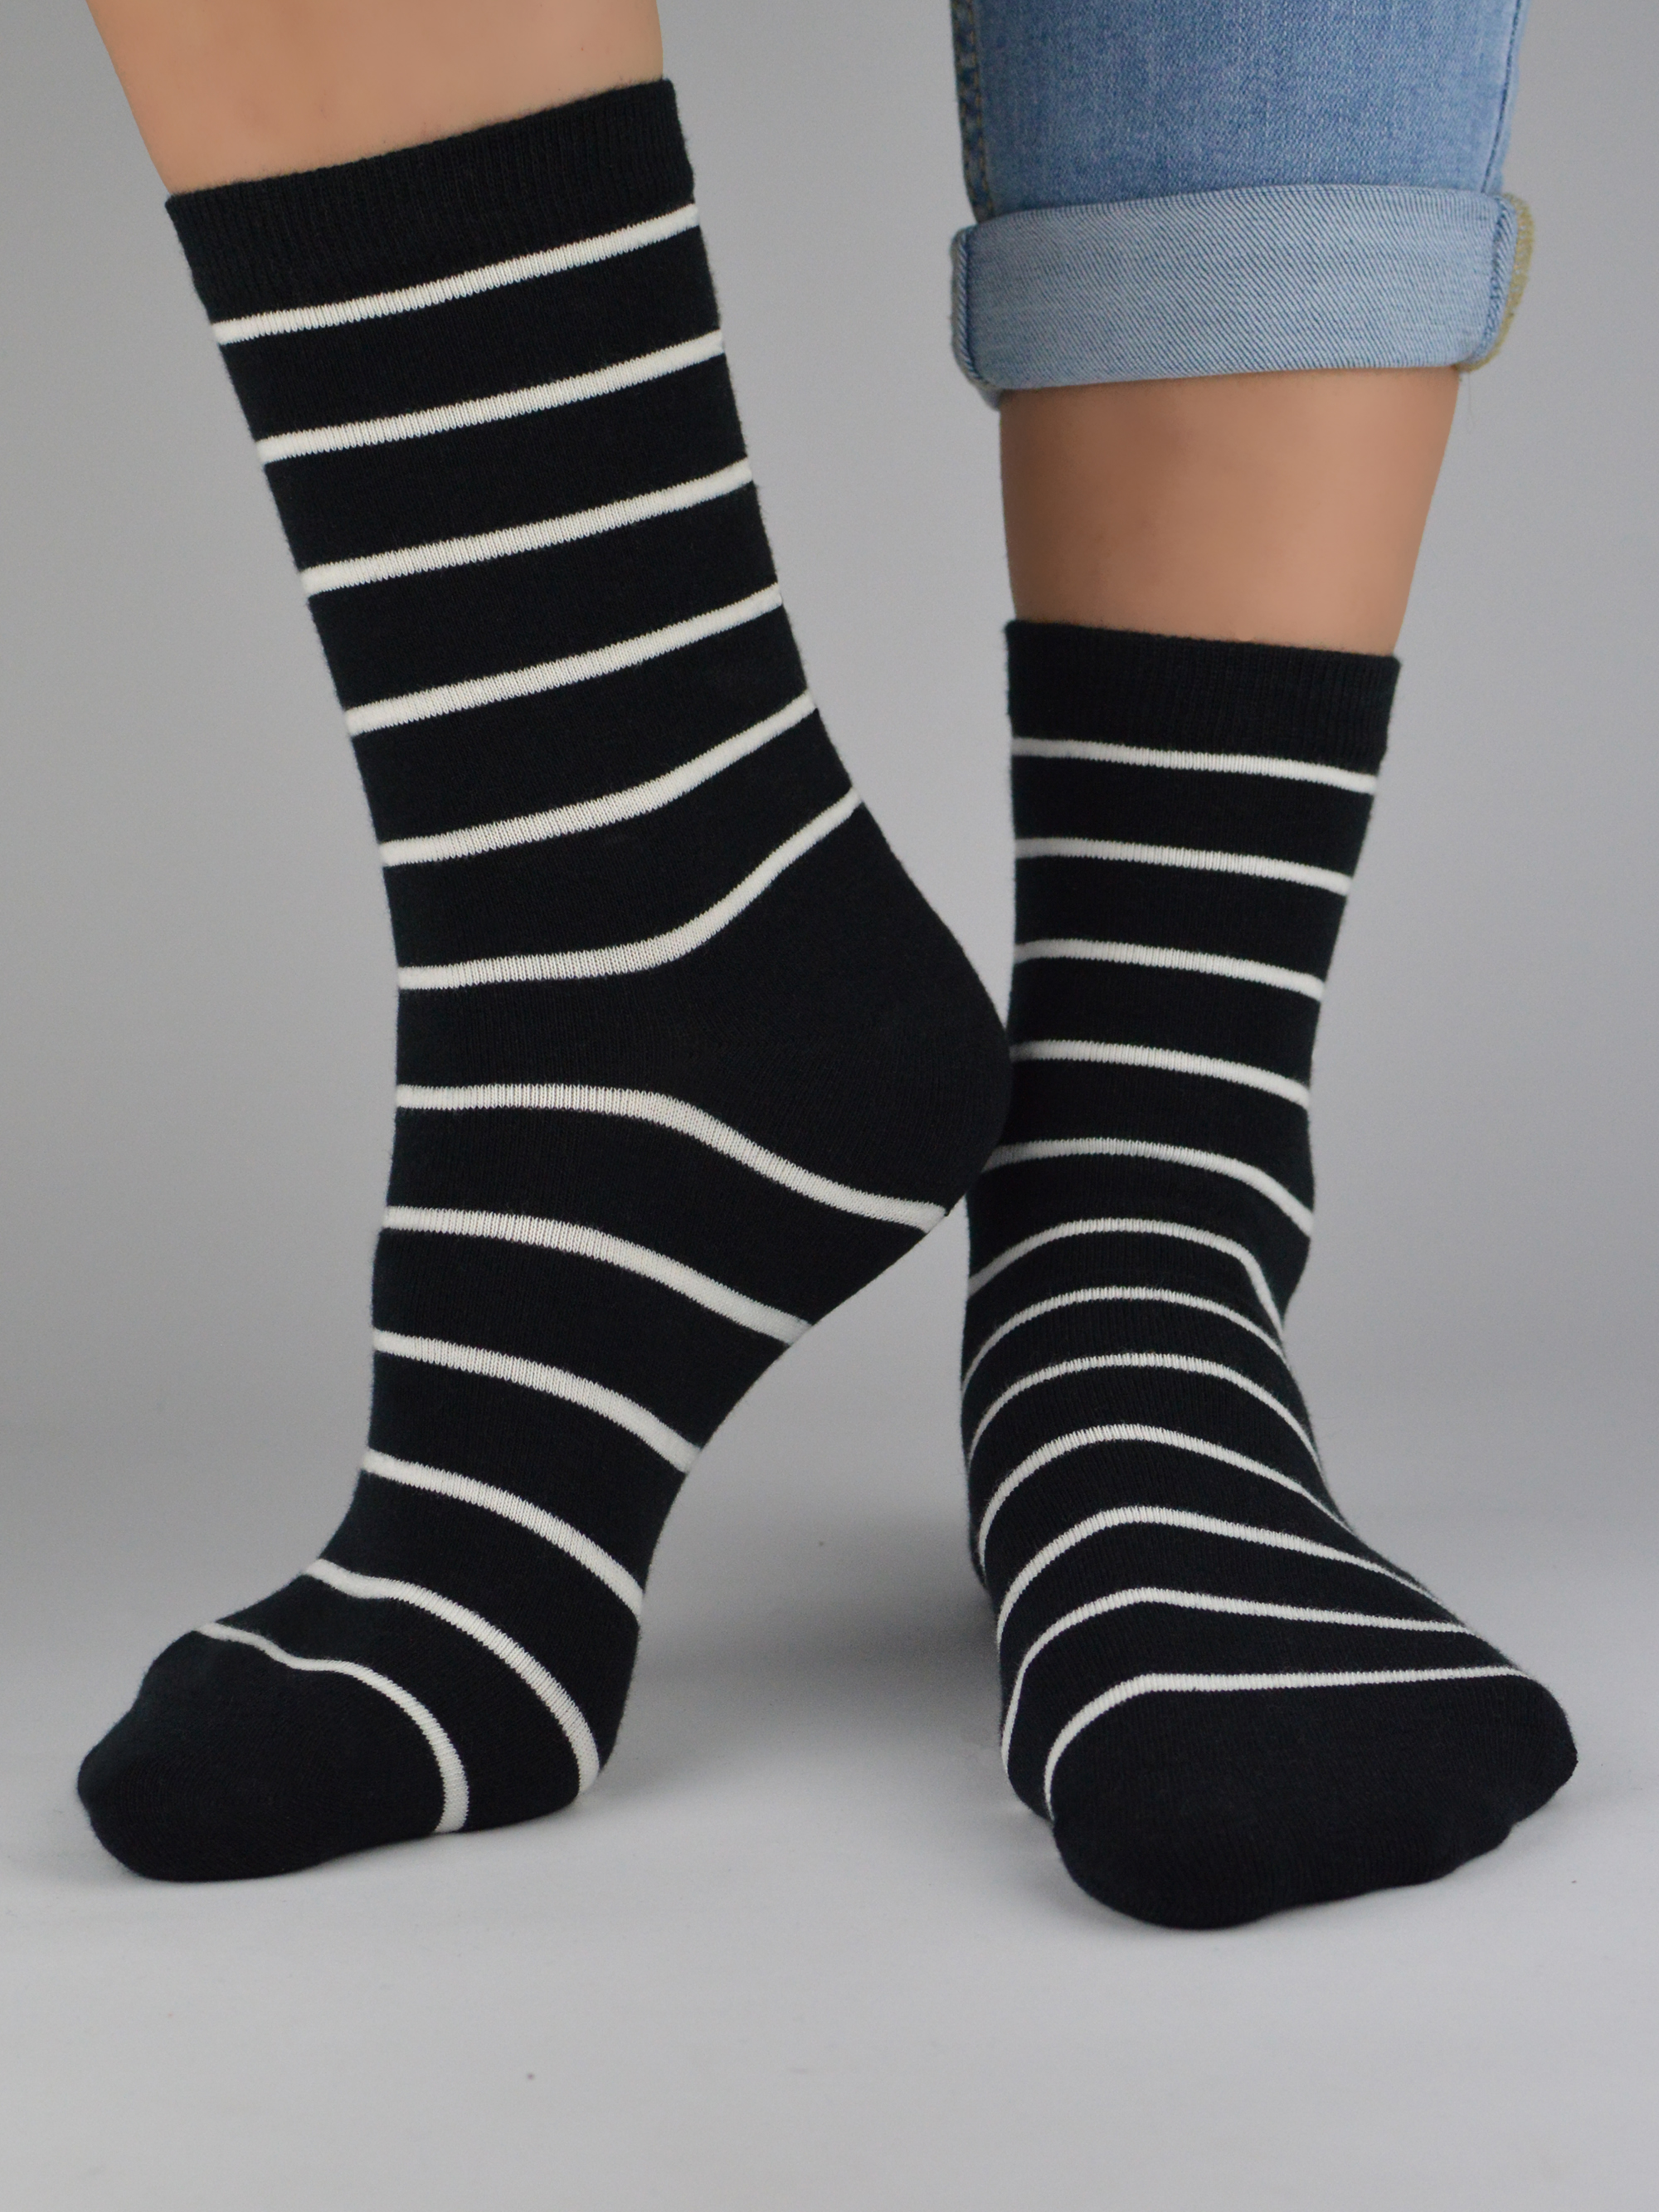 NOVITI Woman's Socks SB047-W-02